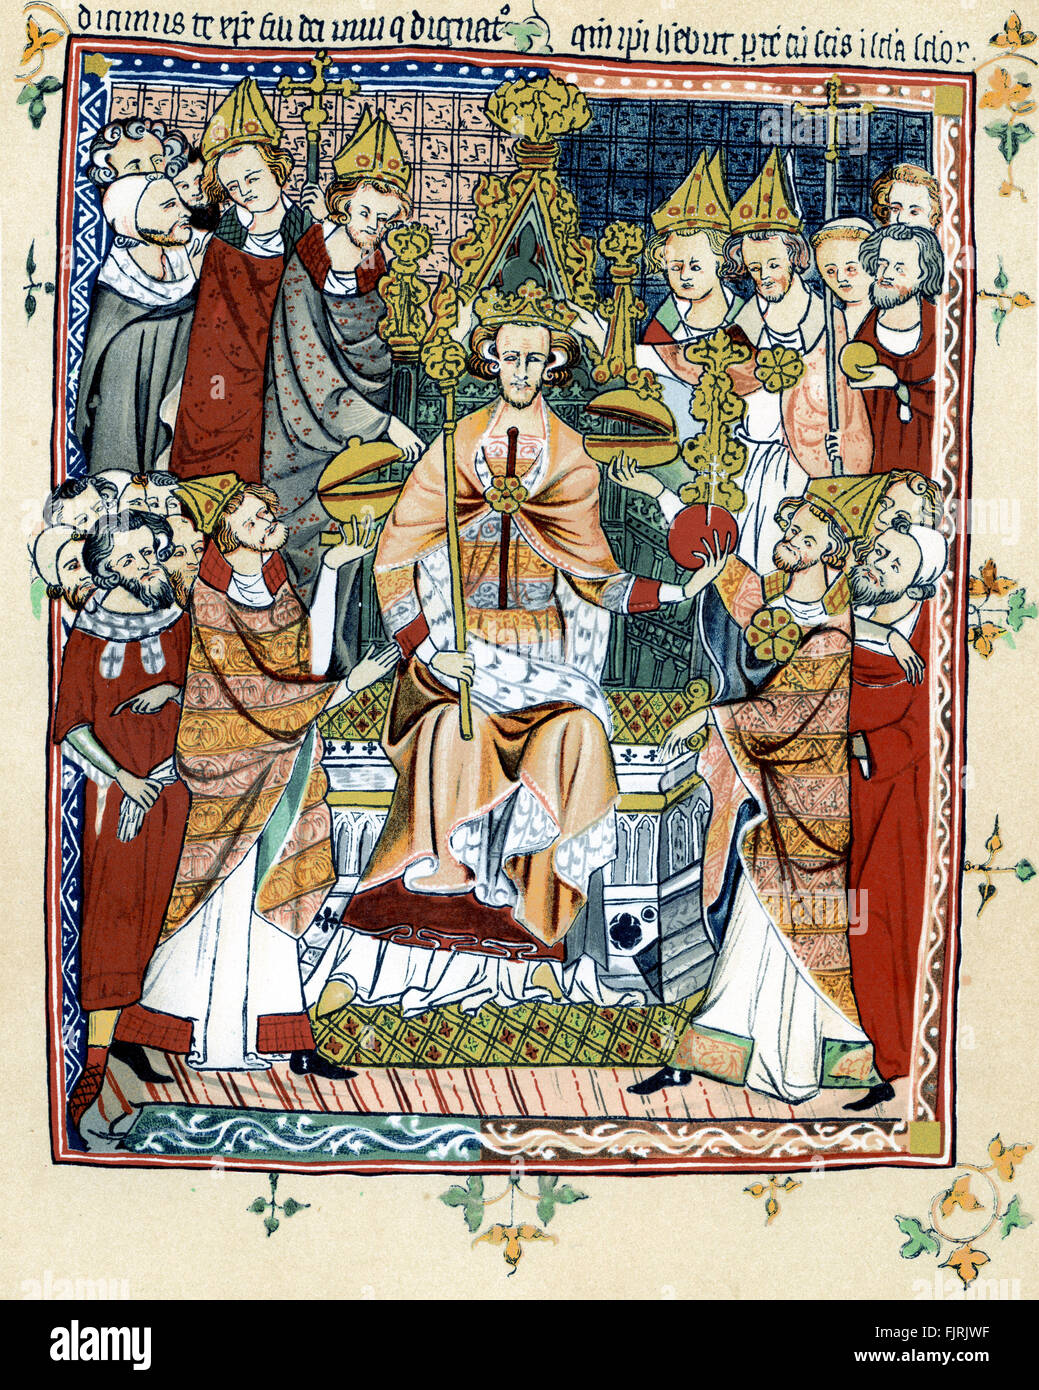 Incoronazione di un re medievale dell'Inghilterra, inizi del XIV secolo (possibile Edward III - ma non confermato) (Da un manoscritto della raccolta del Corpus Cristo College di Cambridge) Foto Stock